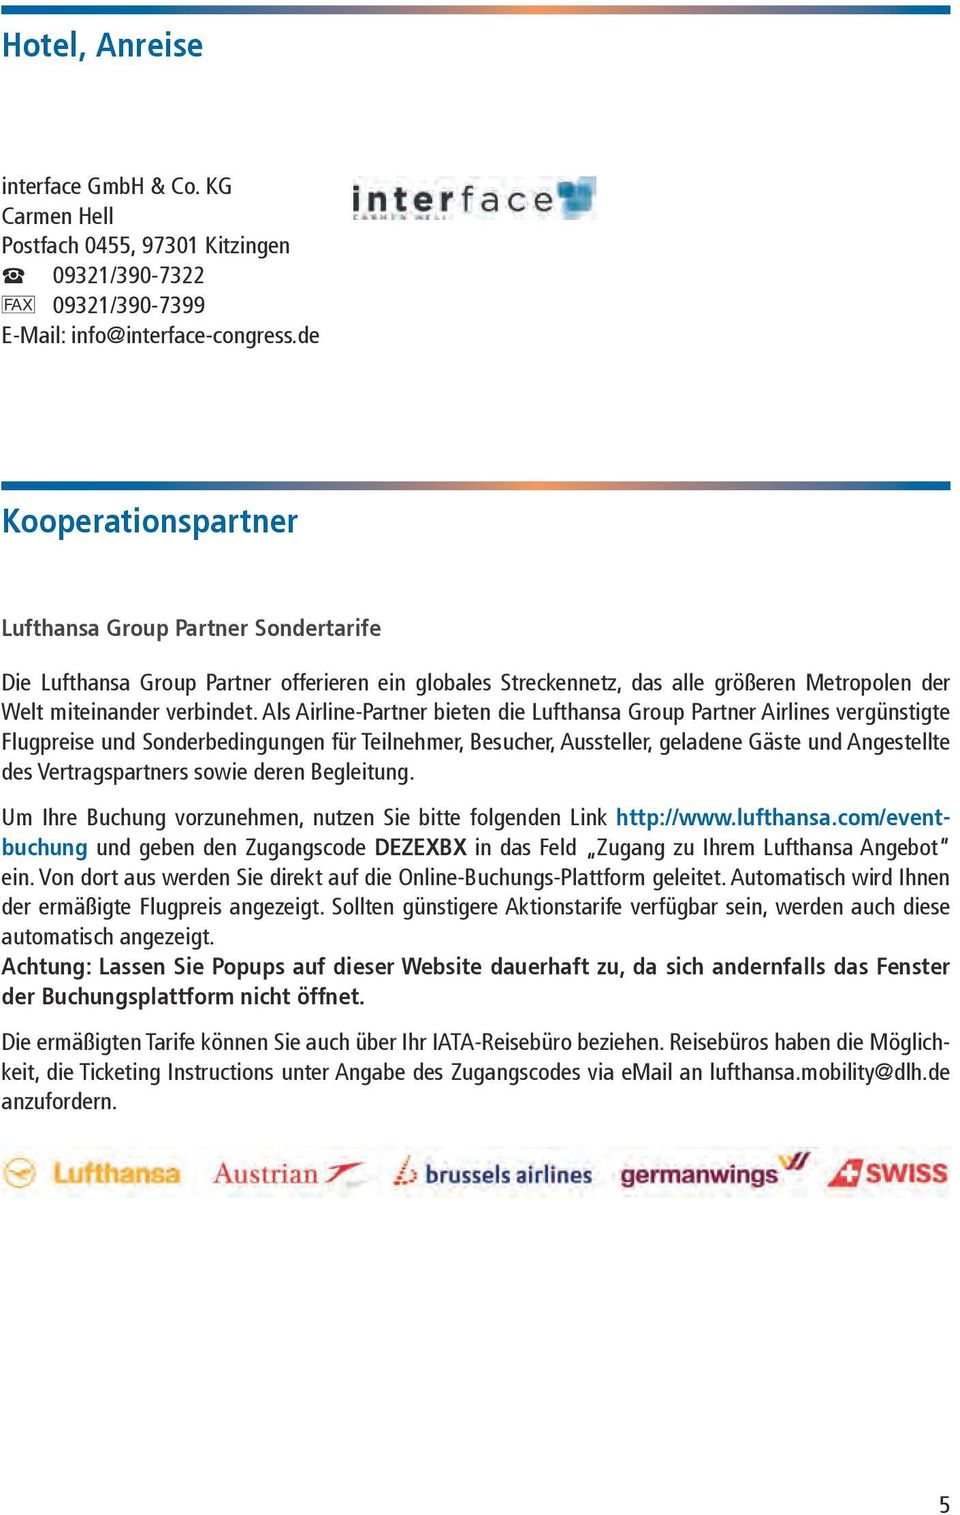 Als Airline-Partner bieten die Lufthansa Group Partner Airlines vergünstigte Flugpreise und Sonderbedingungen für Teilnehmer, Besucher, Aussteller, geladene Gäste und Angestellte des Vertragspartners